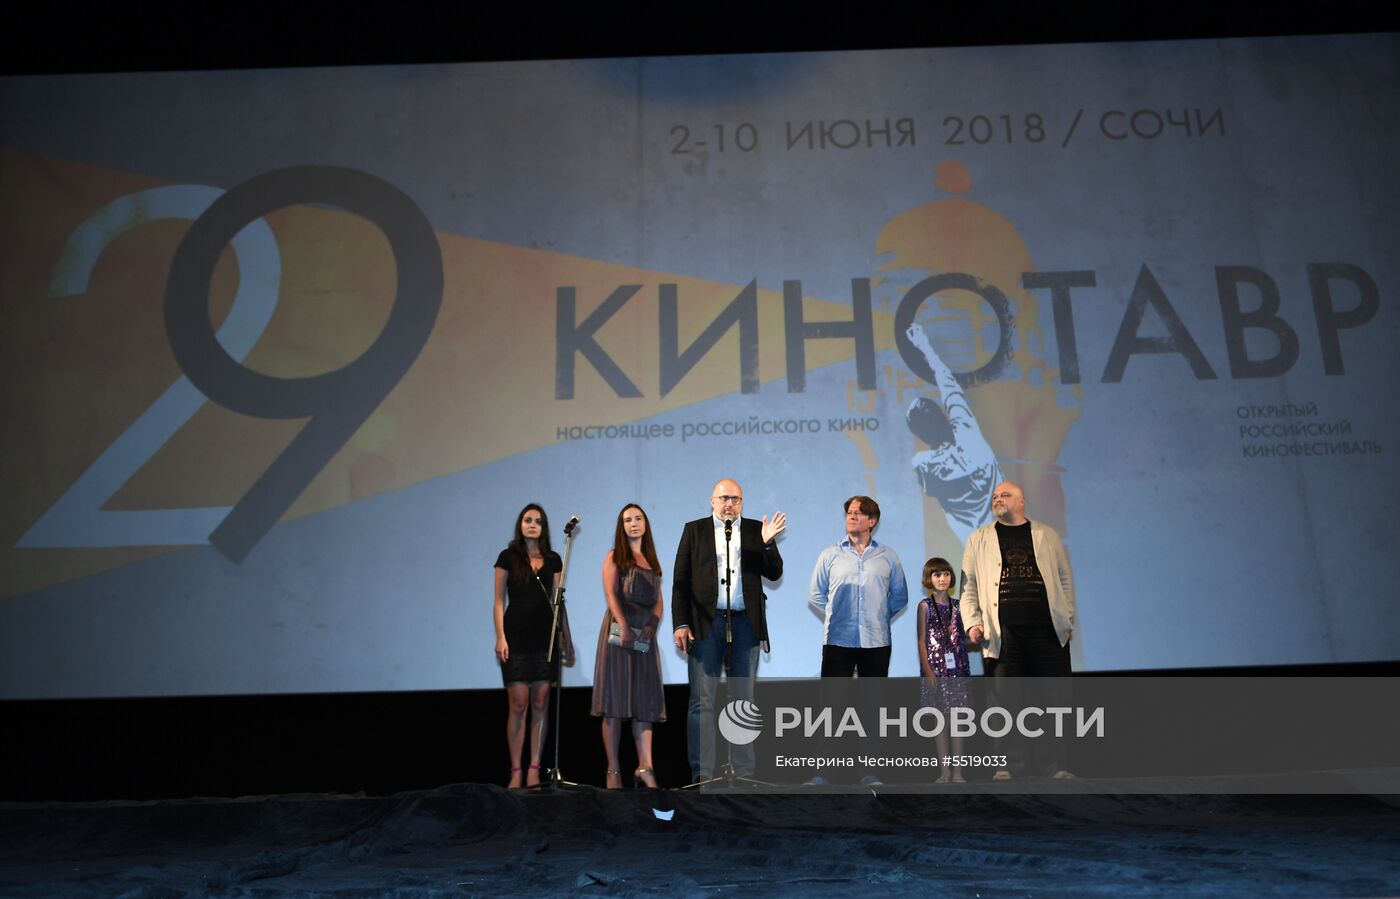 29-й Открытый Российский кинофестиваль "Кинотавр". День первый